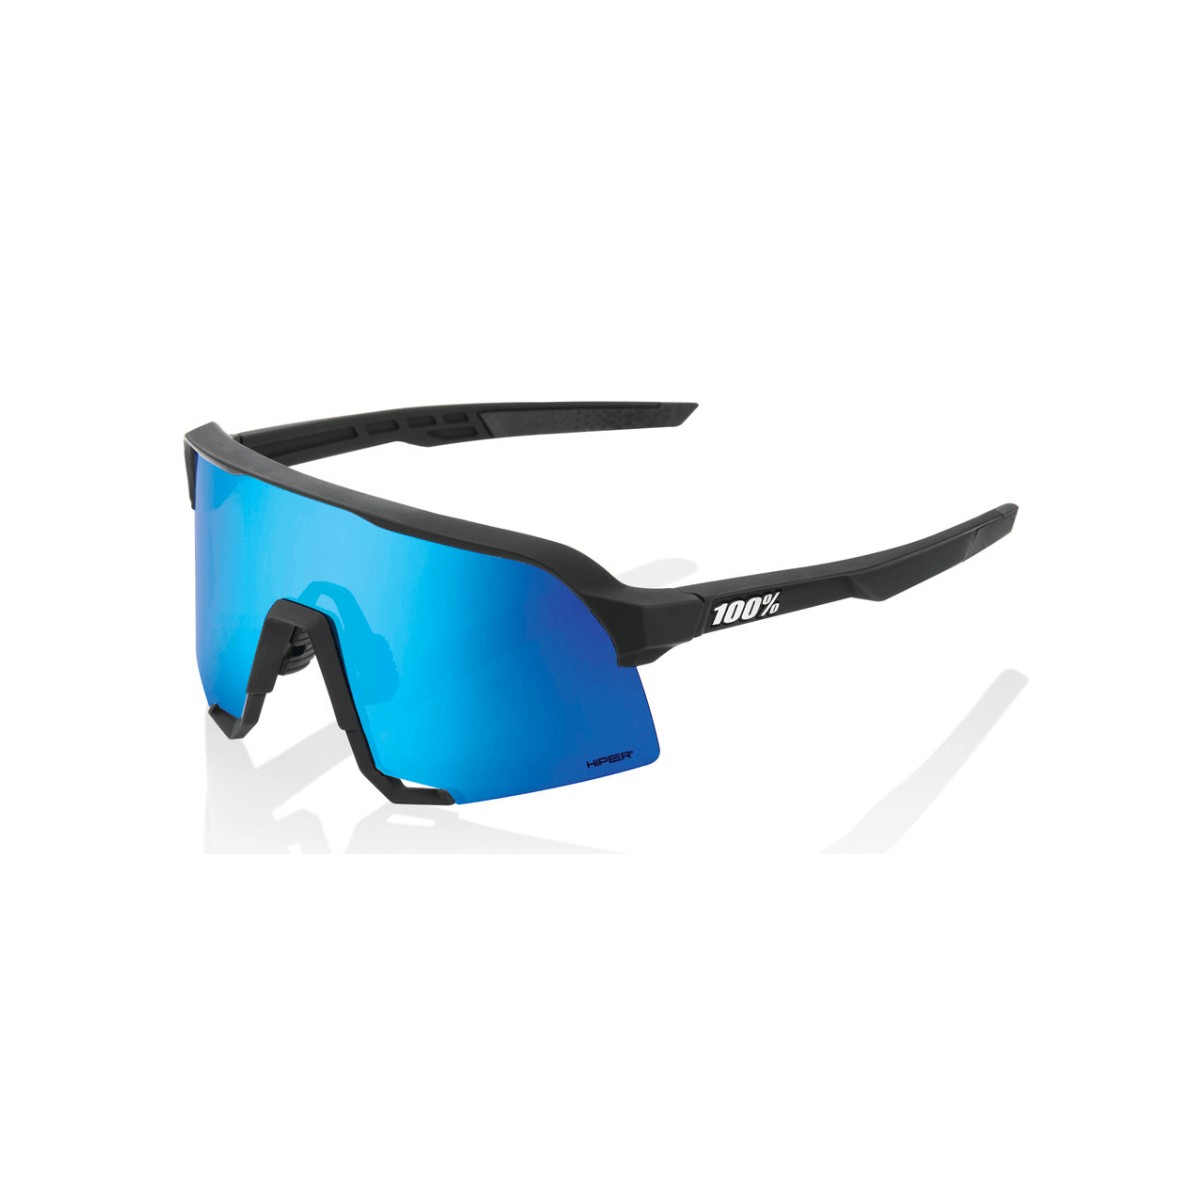 Gafas 100% S3 Hiper Azul Multilayer Lente Mirror Negro